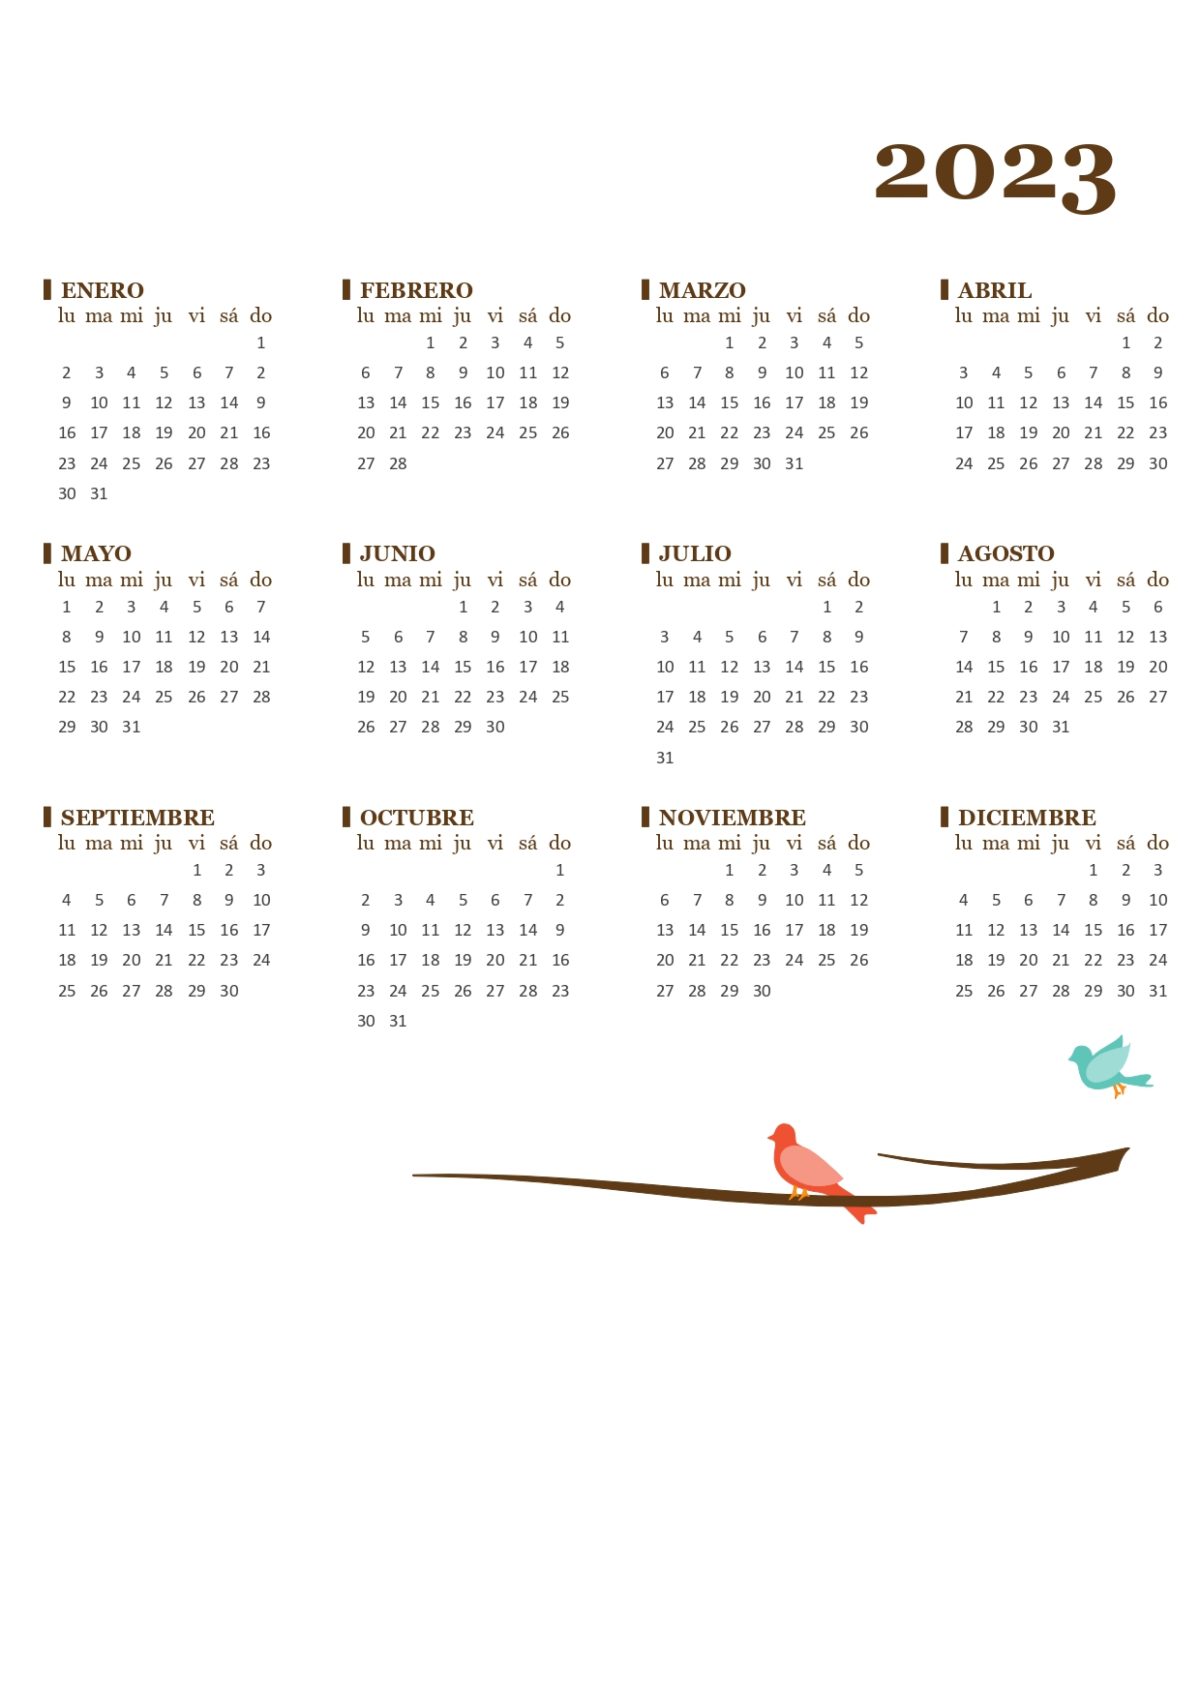 Calendario con pajaros 2023